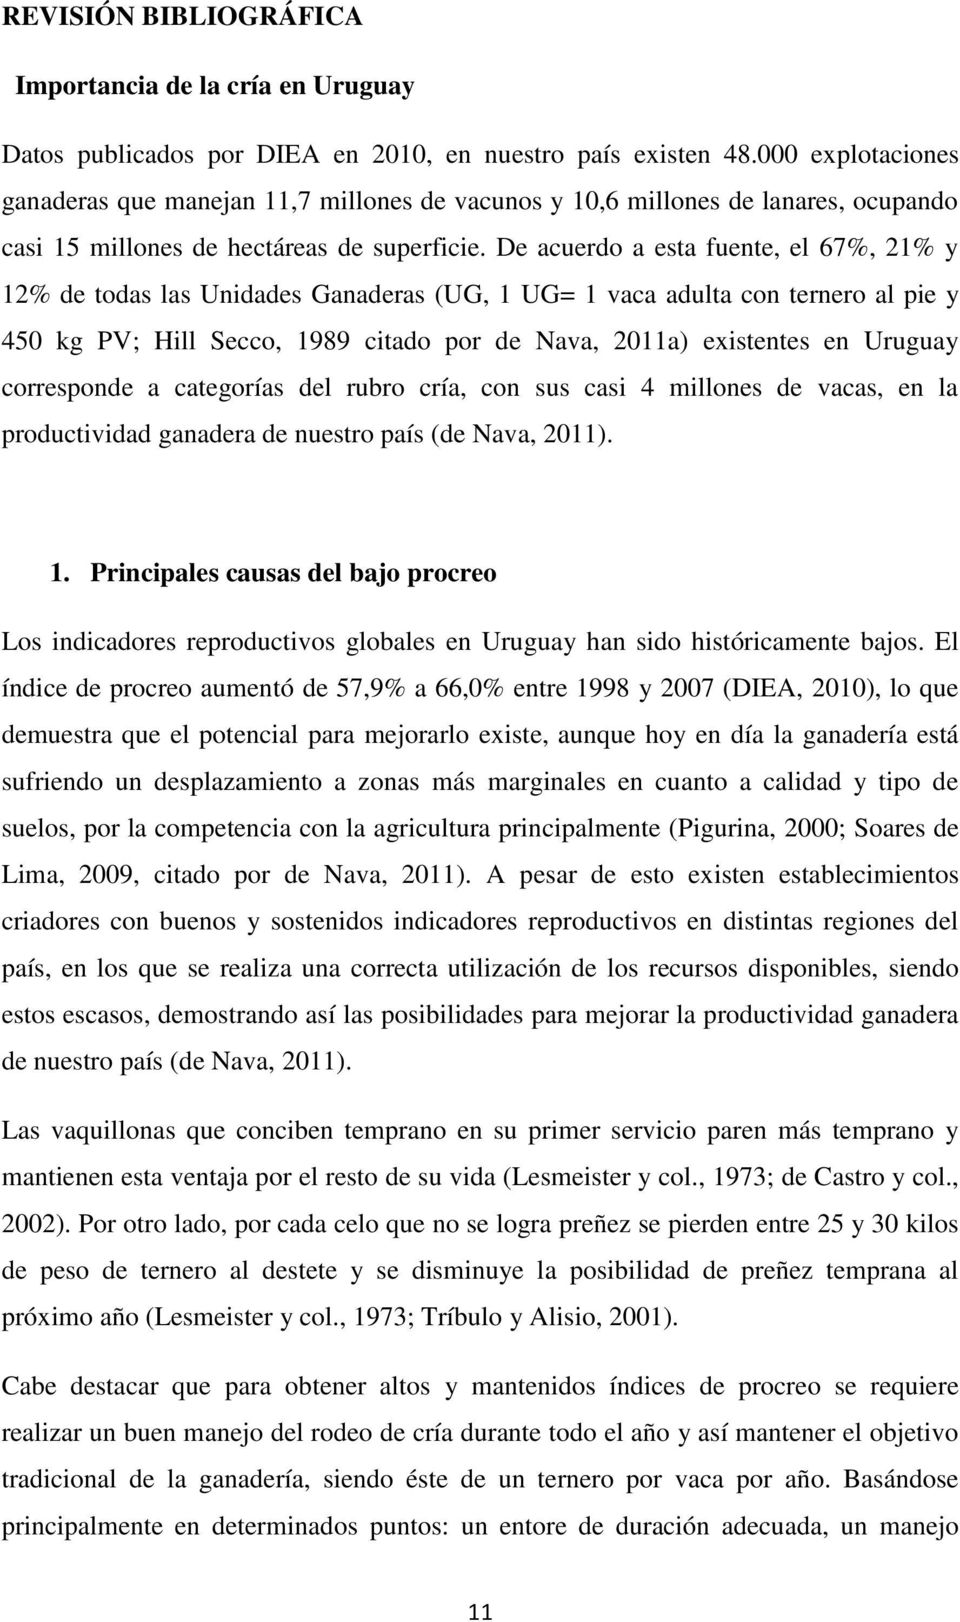 De acuerdo a esta fuente, el 67%, 21% y 12% de todas las Unidades Ganaderas (UG, 1 UG= 1 vaca adulta con ternero al pie y 450 kg PV; Hill Secco, 1989 citado por de Nava, 2011a) existentes en Uruguay